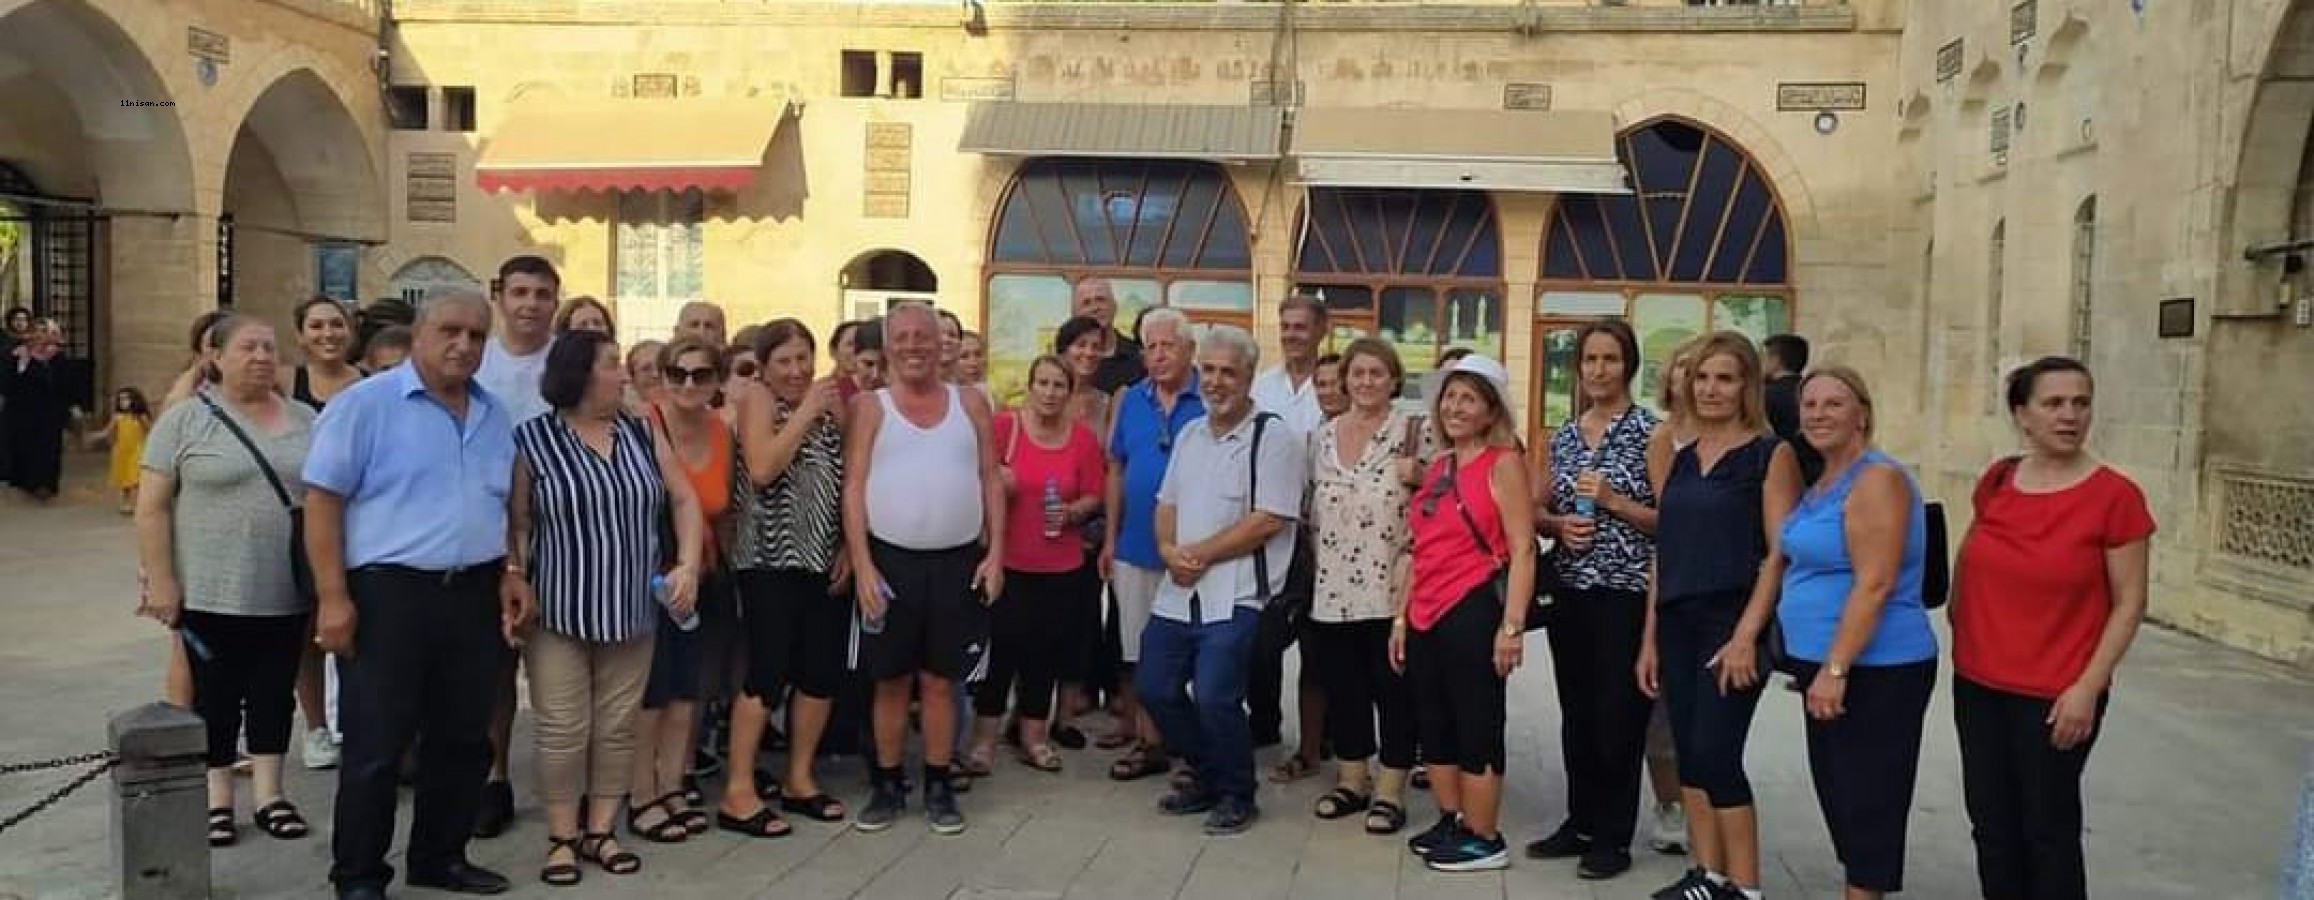 Süryani turistler 100 yıl sonra Urfa’ya geziye geldiler